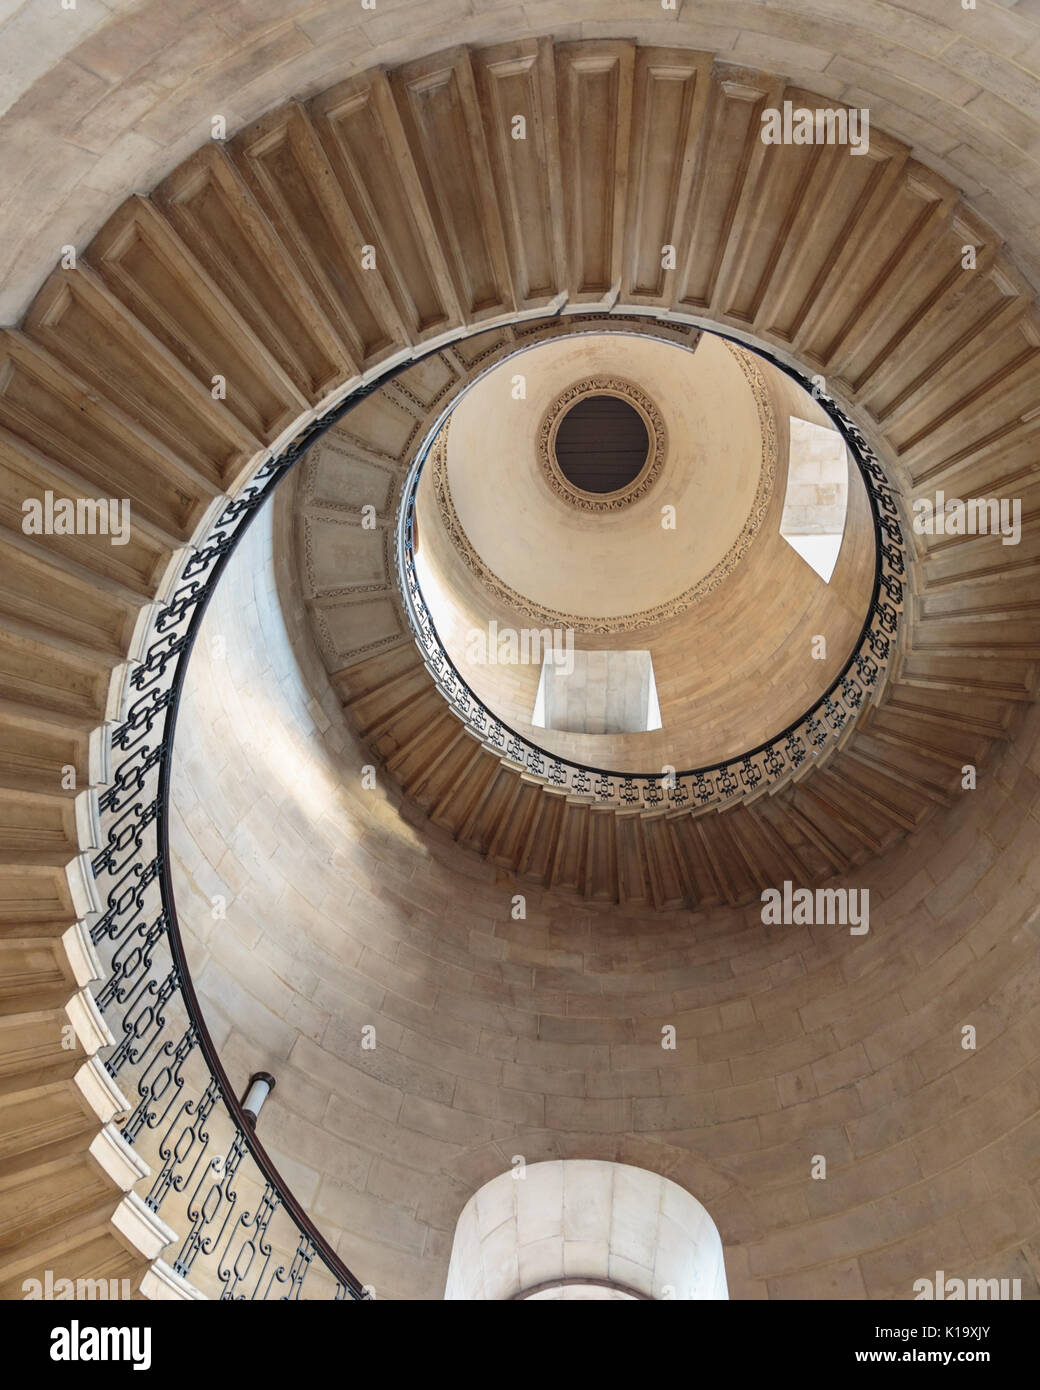 L'escalier du doyen, la cathédrale Saint-Paul, escaliers en spirale rendus célèbres comme le Divination Stairwell dans des scènes des films Harry Potter, Londres Royaume-Uni Banque D'Images